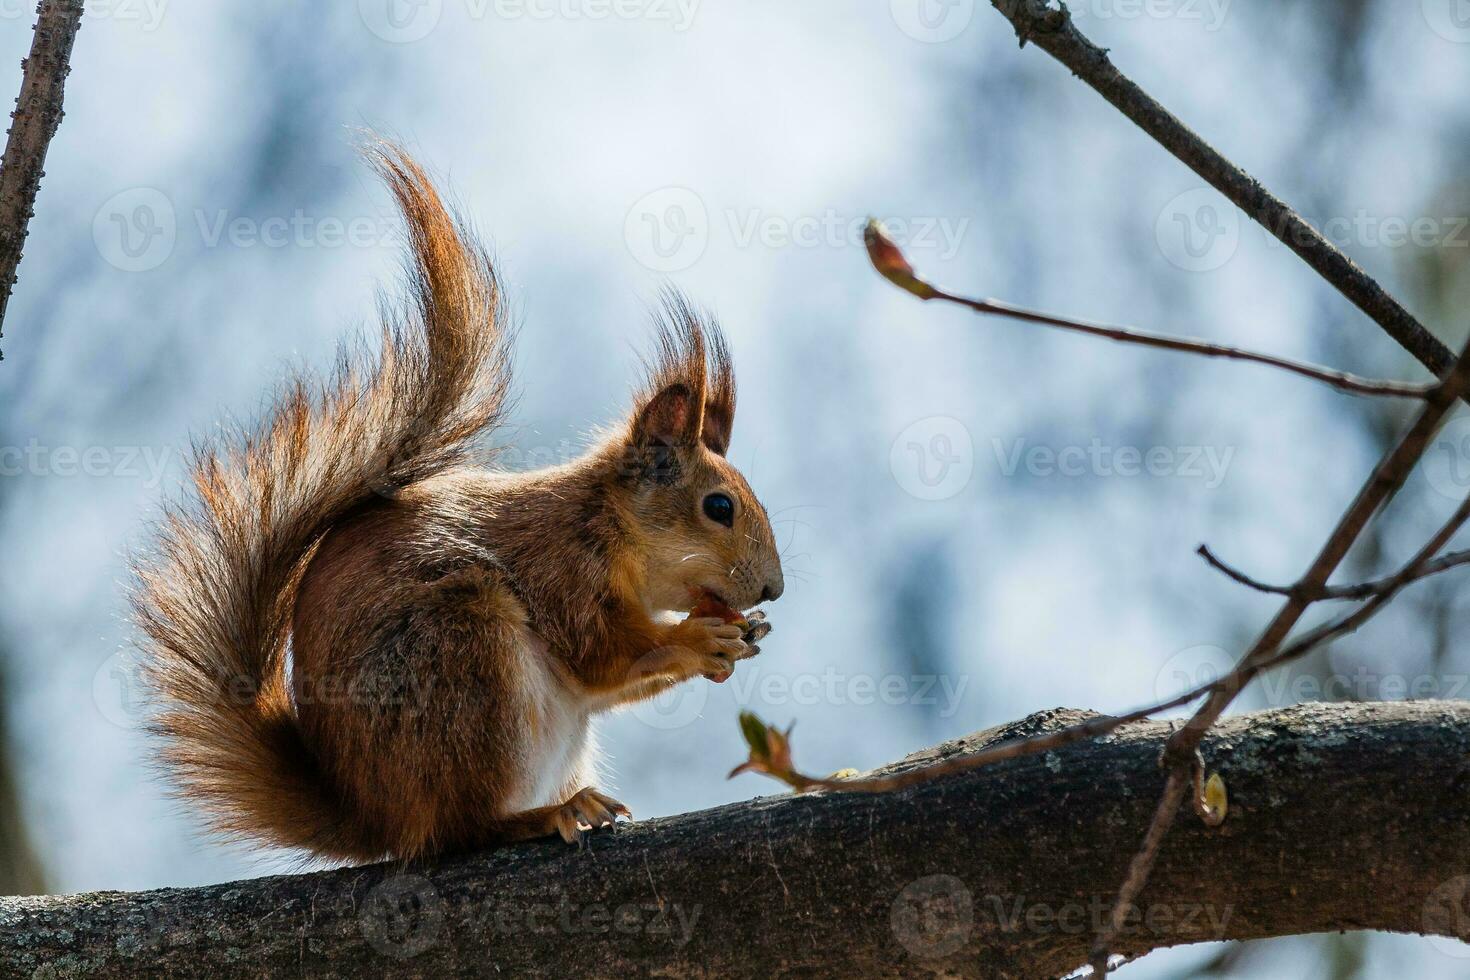 esquilo senta-se em uma árvore foto